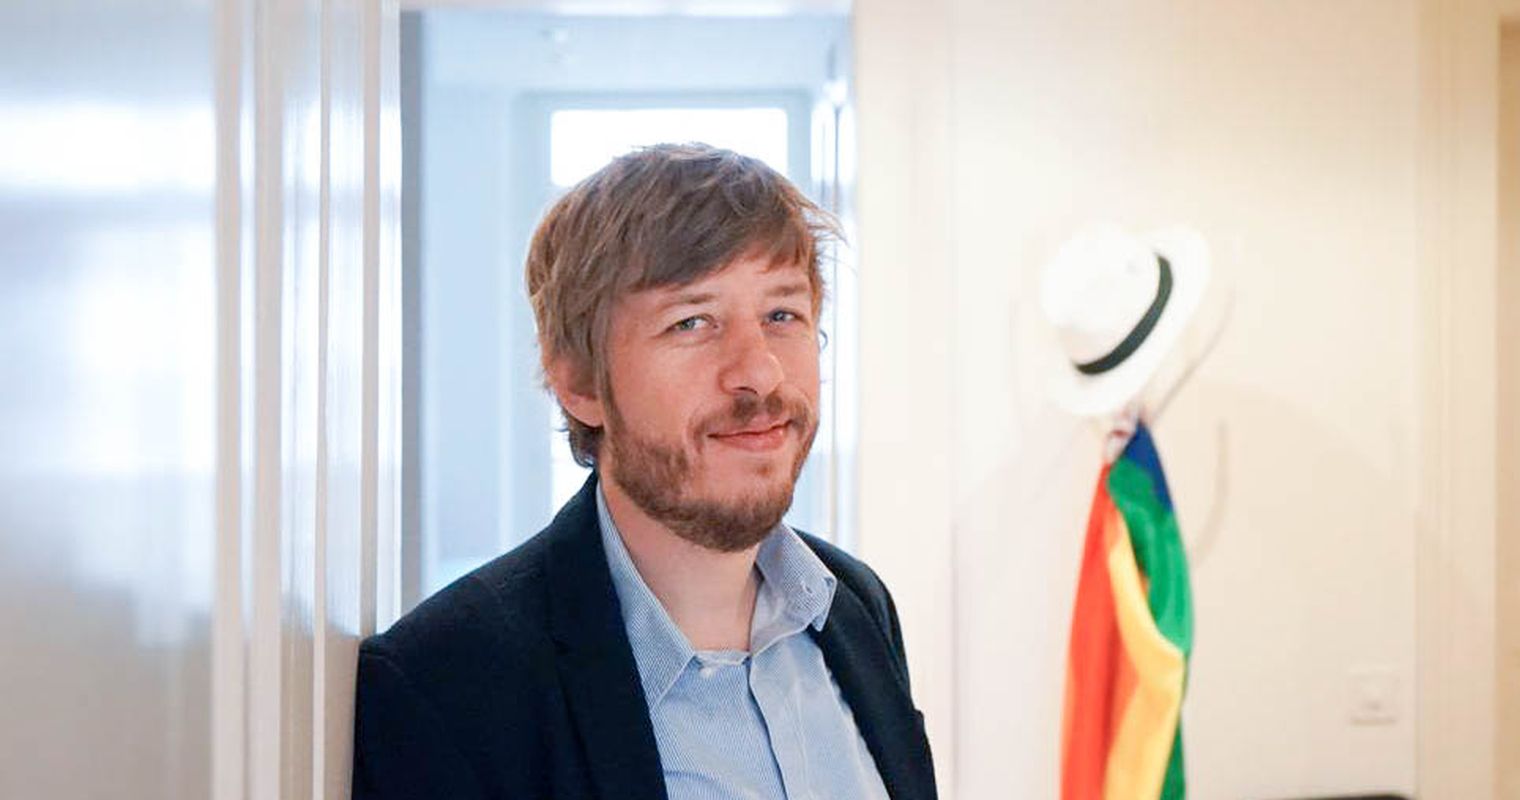 Es wird bunt in Luzern: Neue Party für LGBTQ-Szene